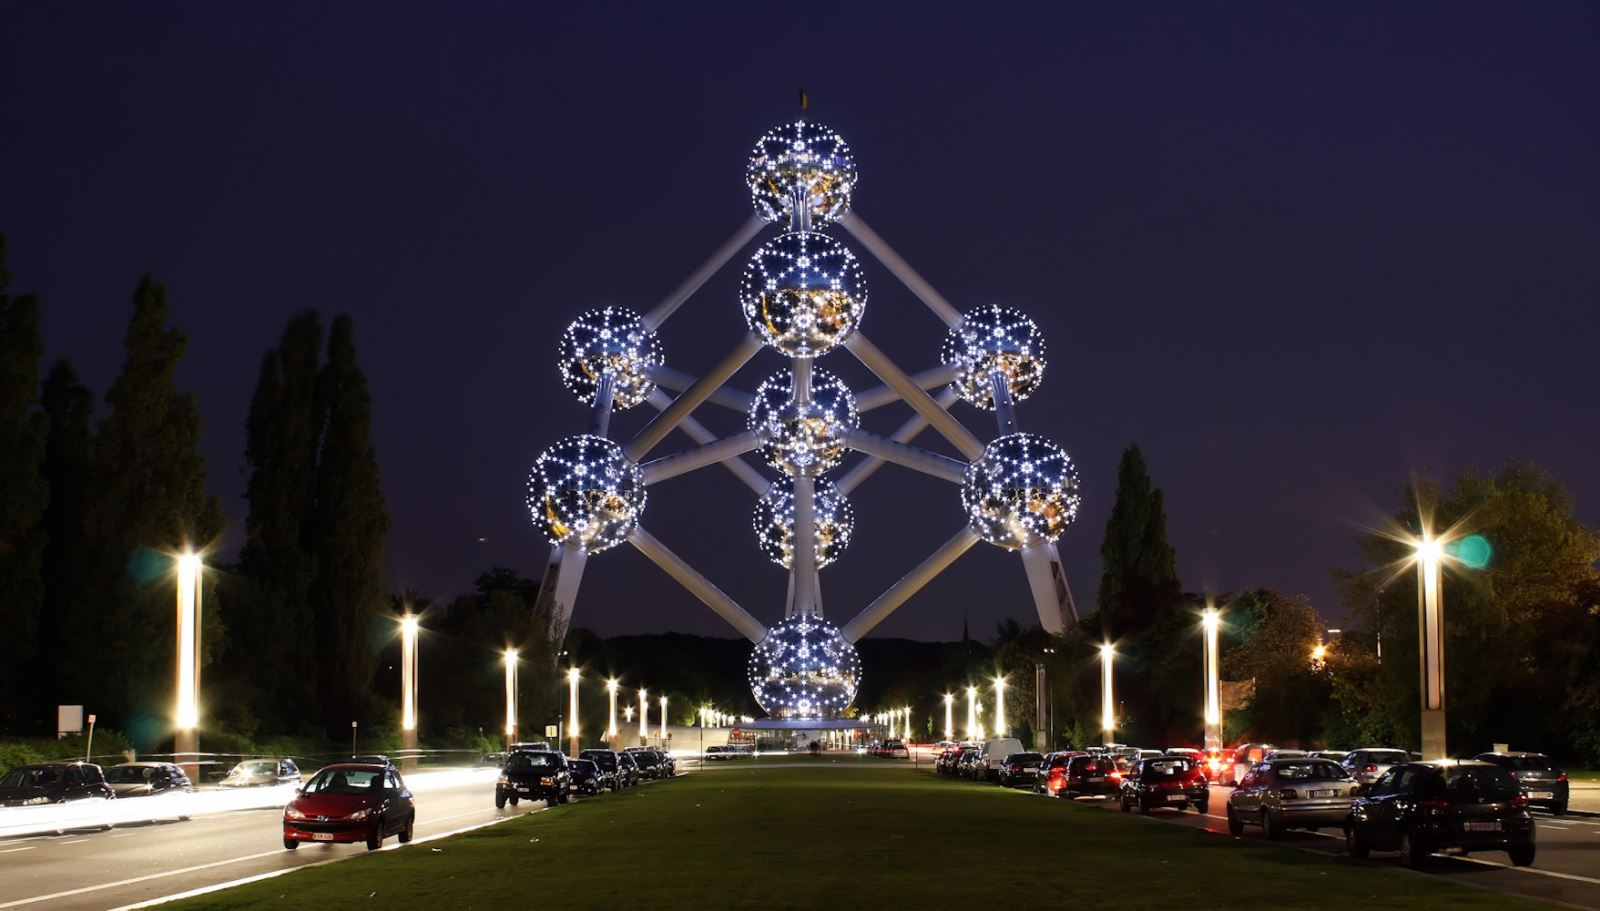 Mô hình Atomium của Bỉ Điểm đến rất thu hút ở Brussels